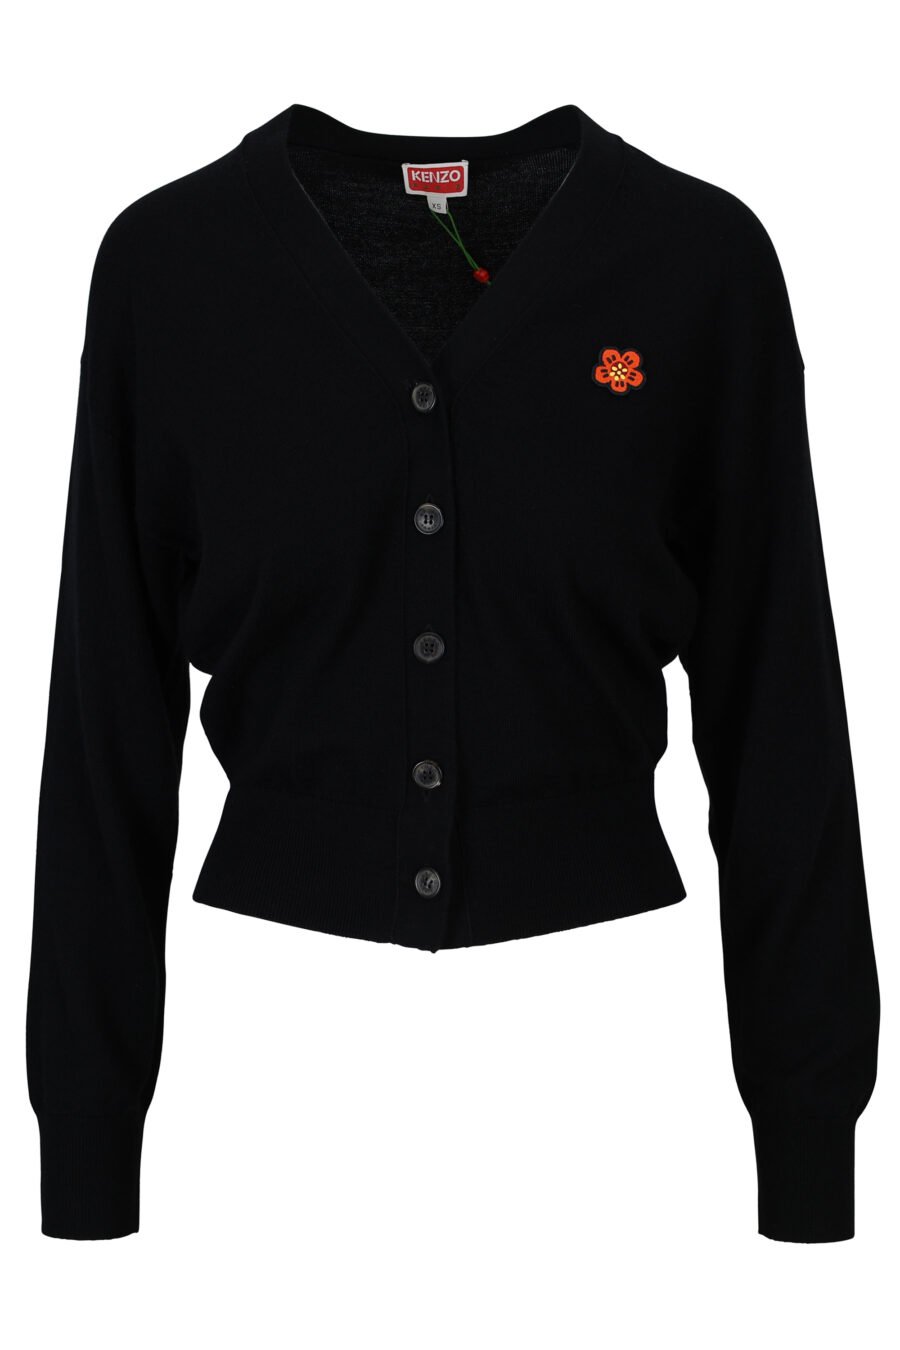 Jersey de lana negro con minilogo "boke flower" - 3612230444249